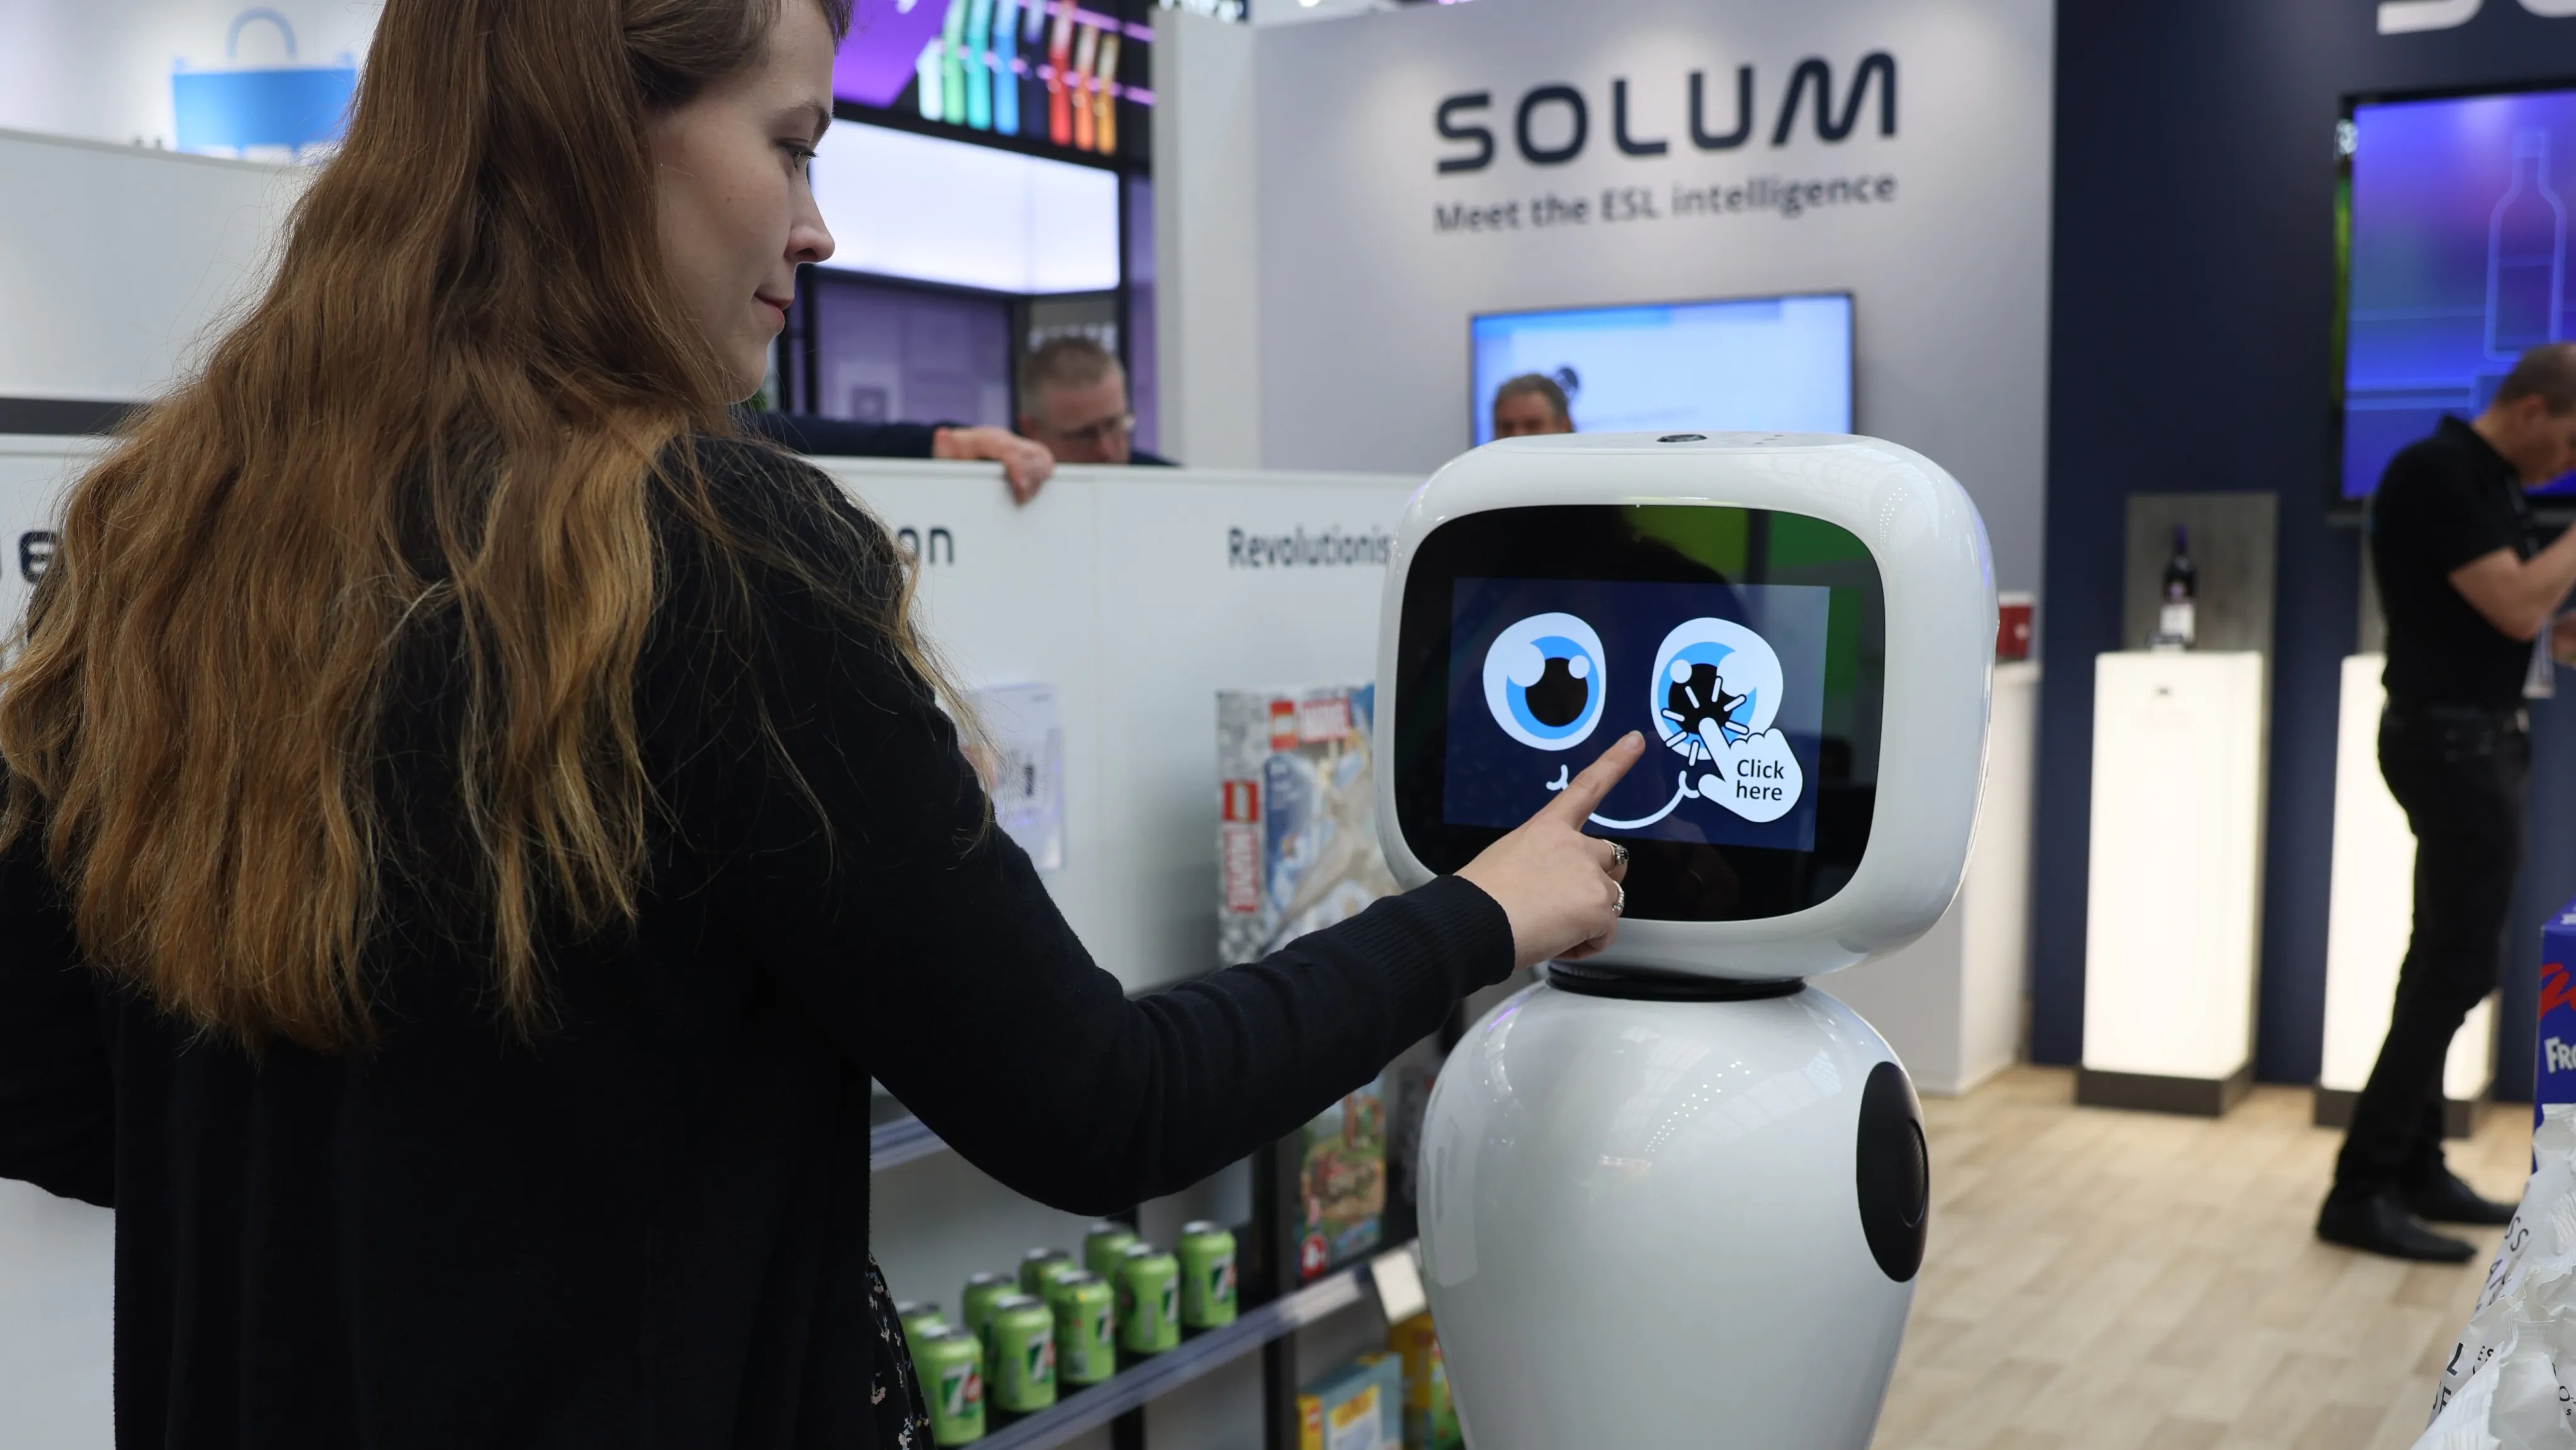 Meet the SOLUM Smart Robot